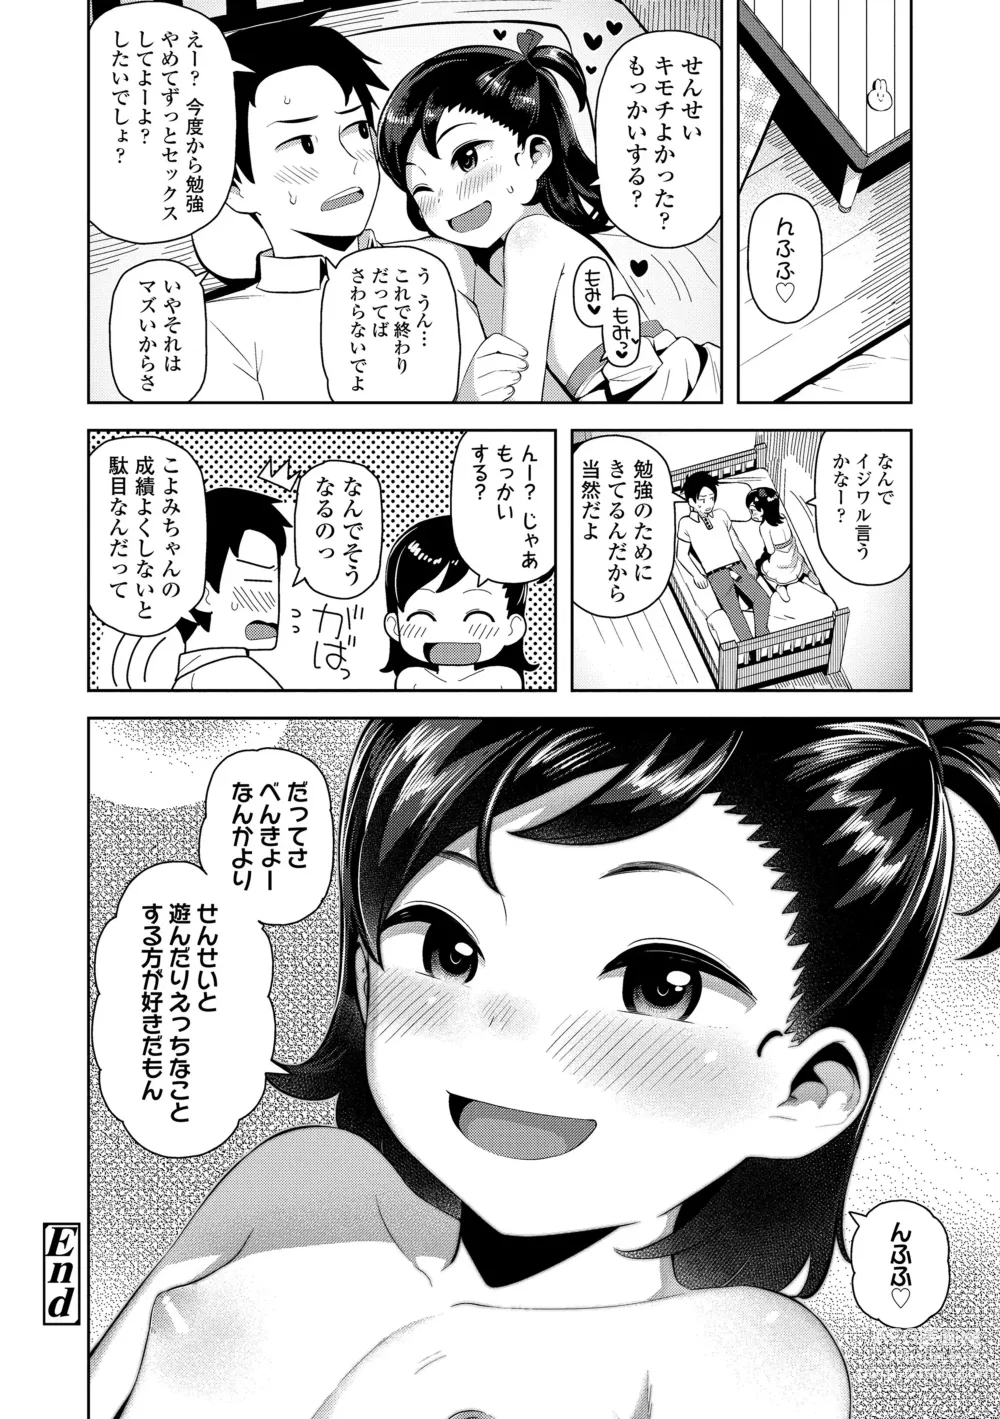 Page 170 of manga Chitchakute ohisama no nioi